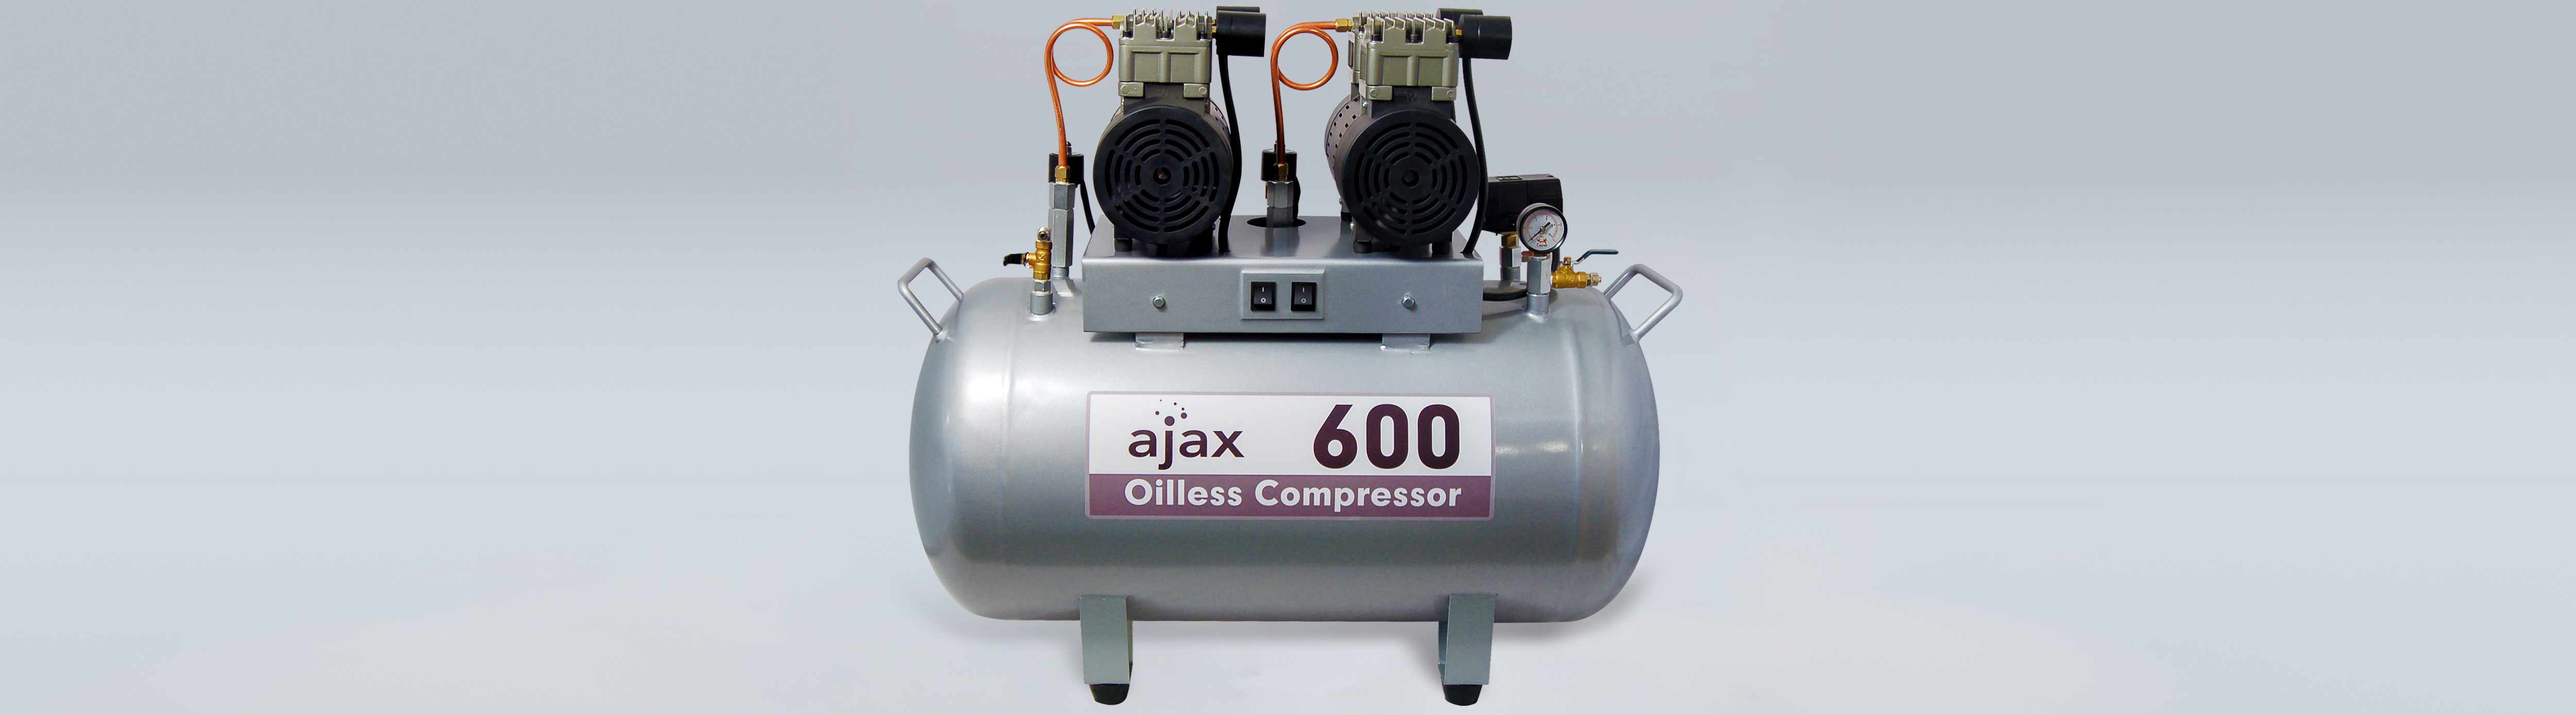 Compressore d'aria AJAX 600